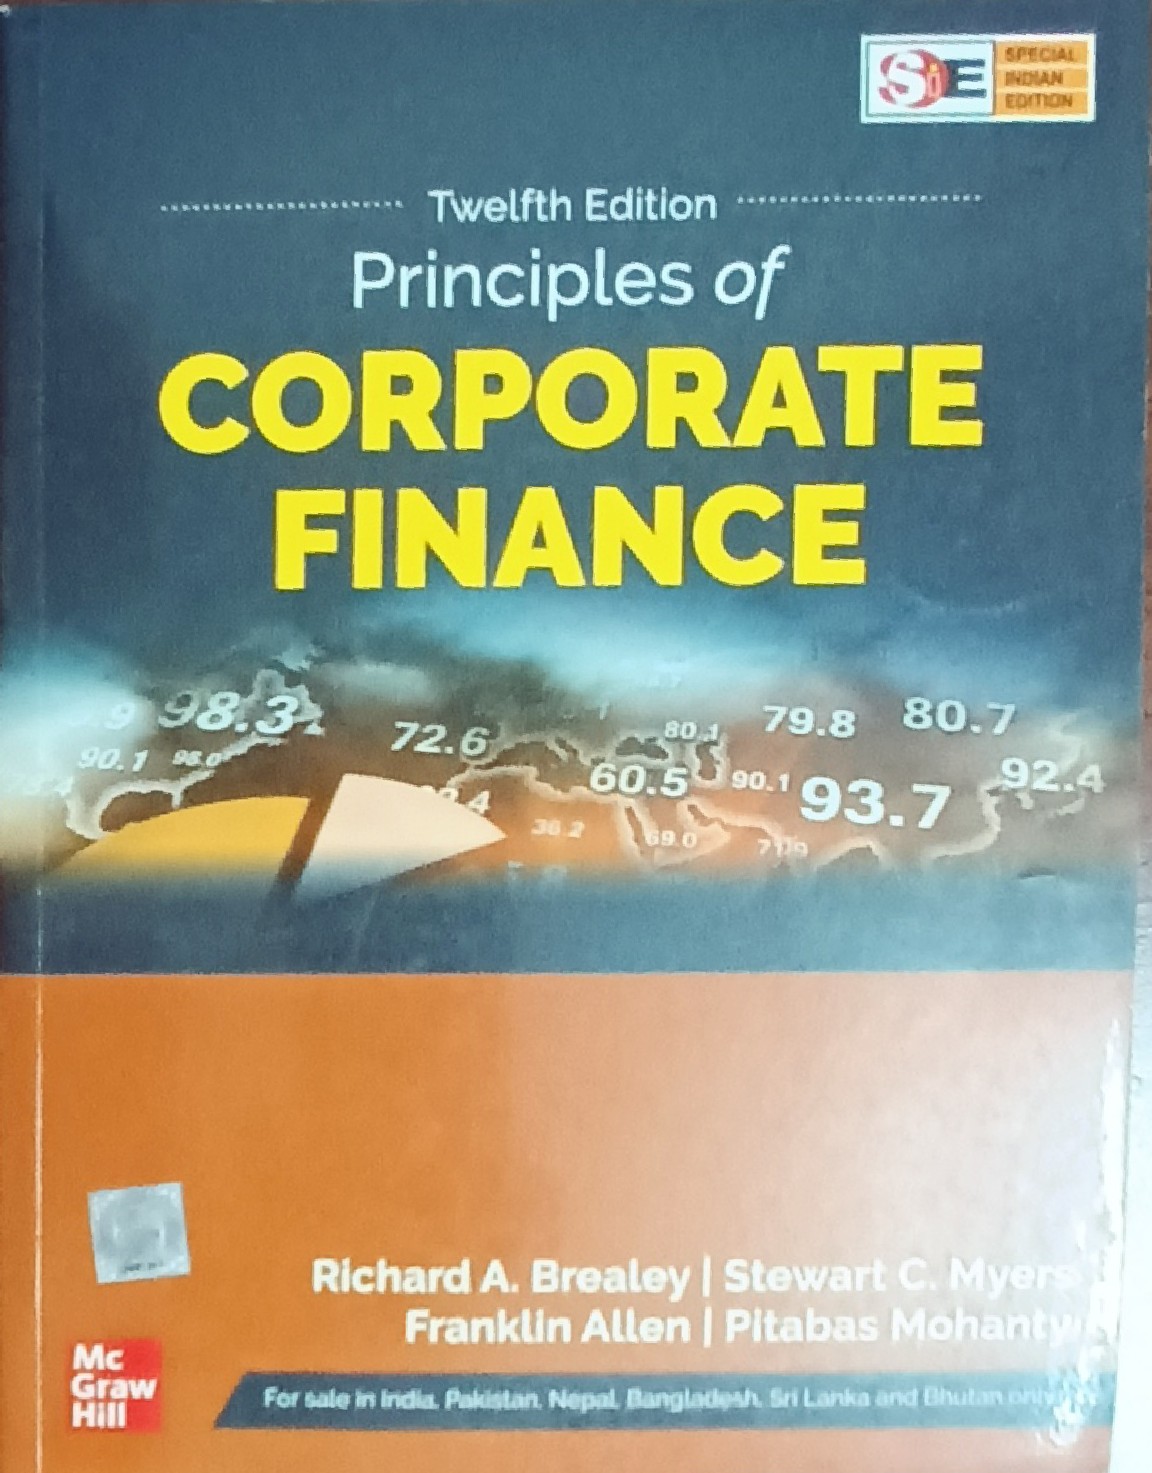 Principle of Corporate Finance